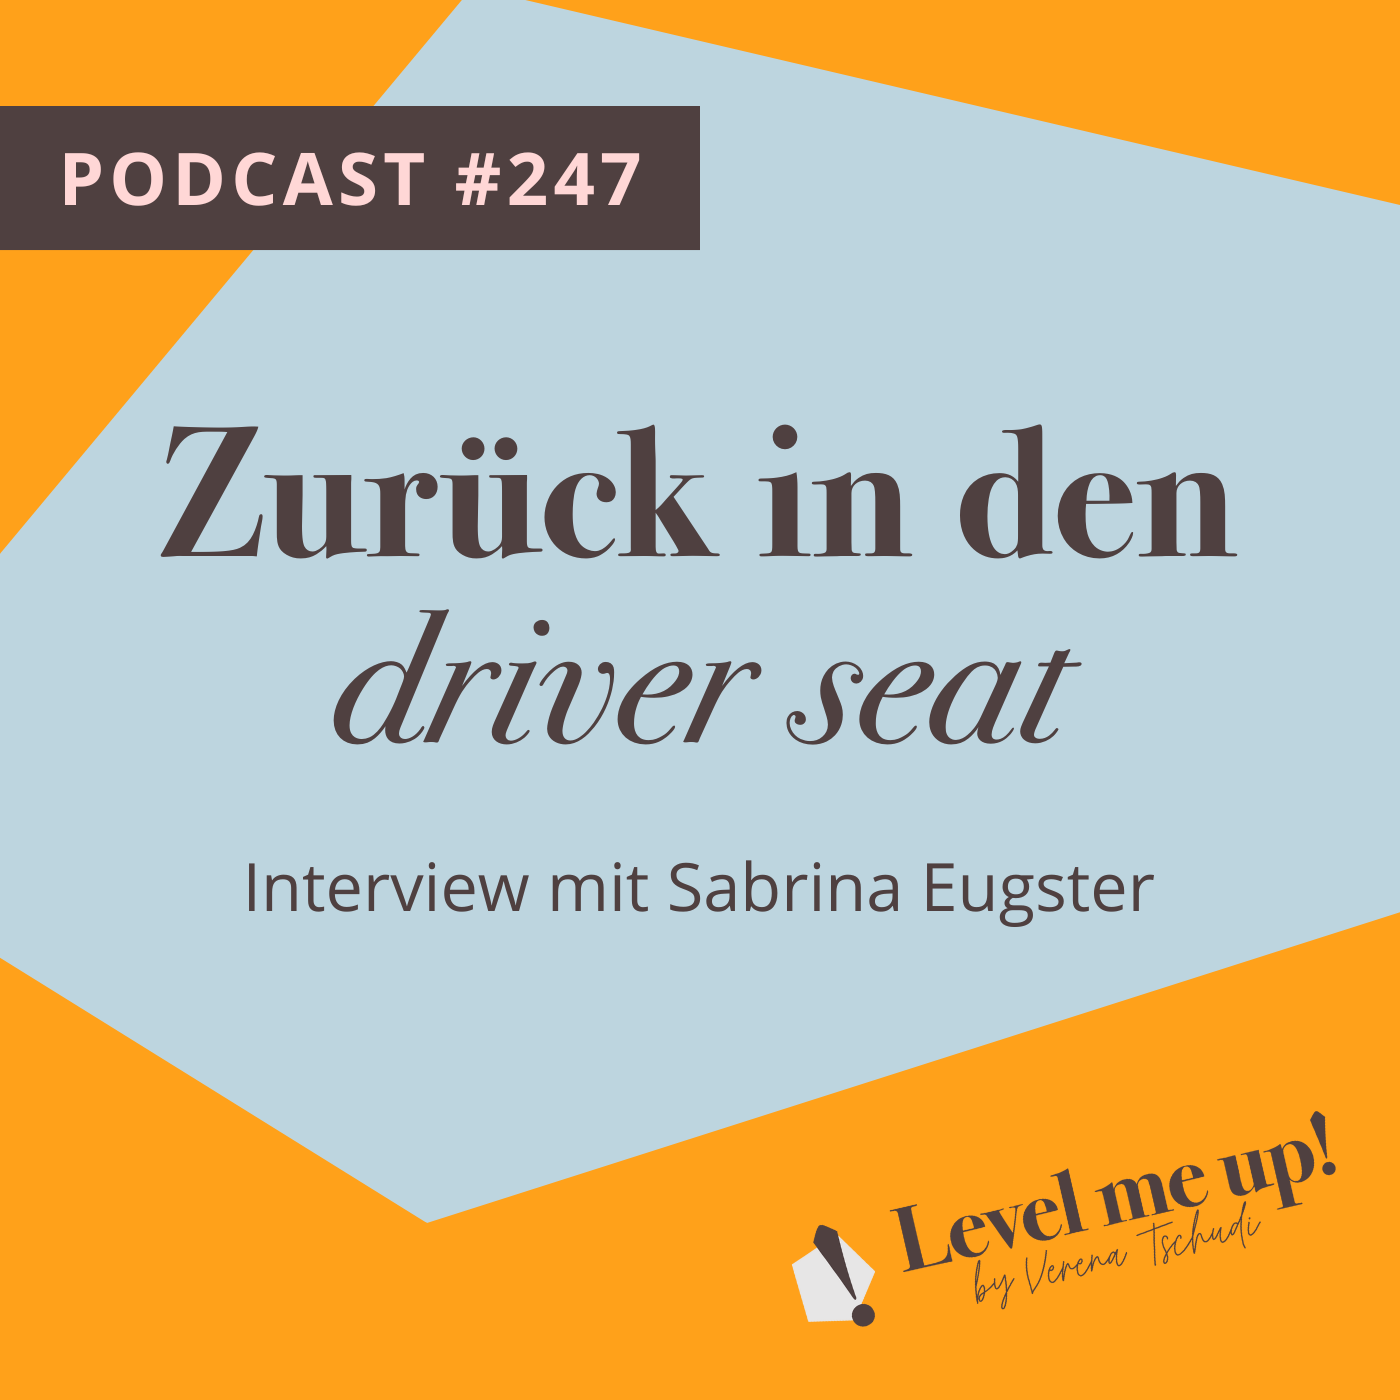 Zurück in den driver seat - Interview mit Sabrina Eugster